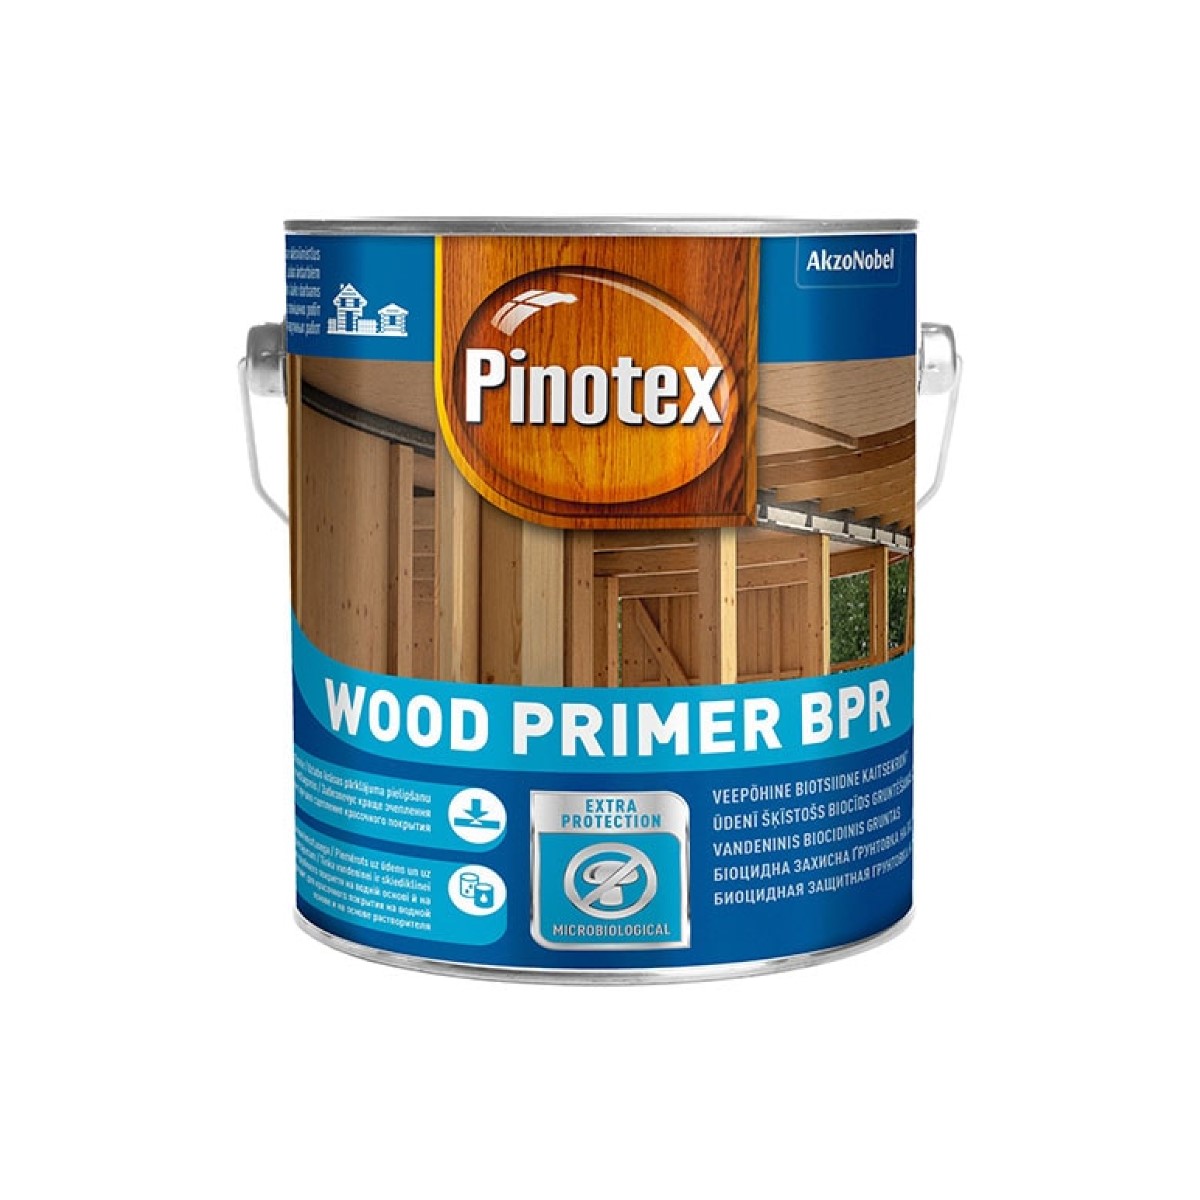 Pinotex Wood Primer BPR Ūdens bāzes biocīds gruntēšanas aizsarglīdzeklis, bezkrāsains 2.5L